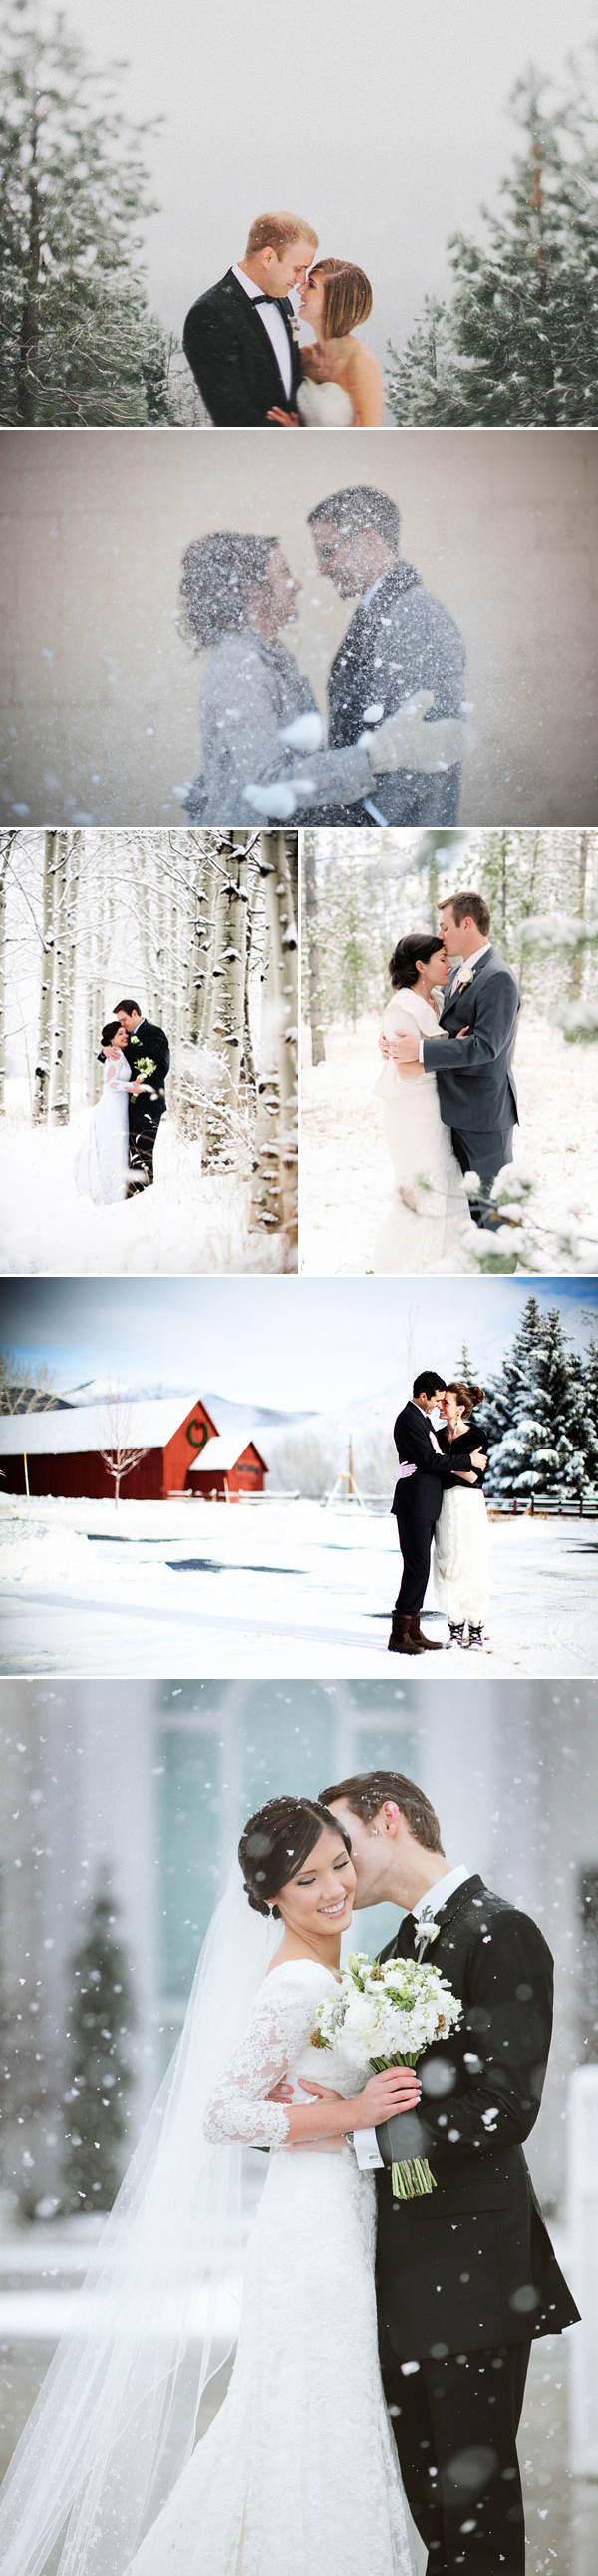 winter-wedding01-white